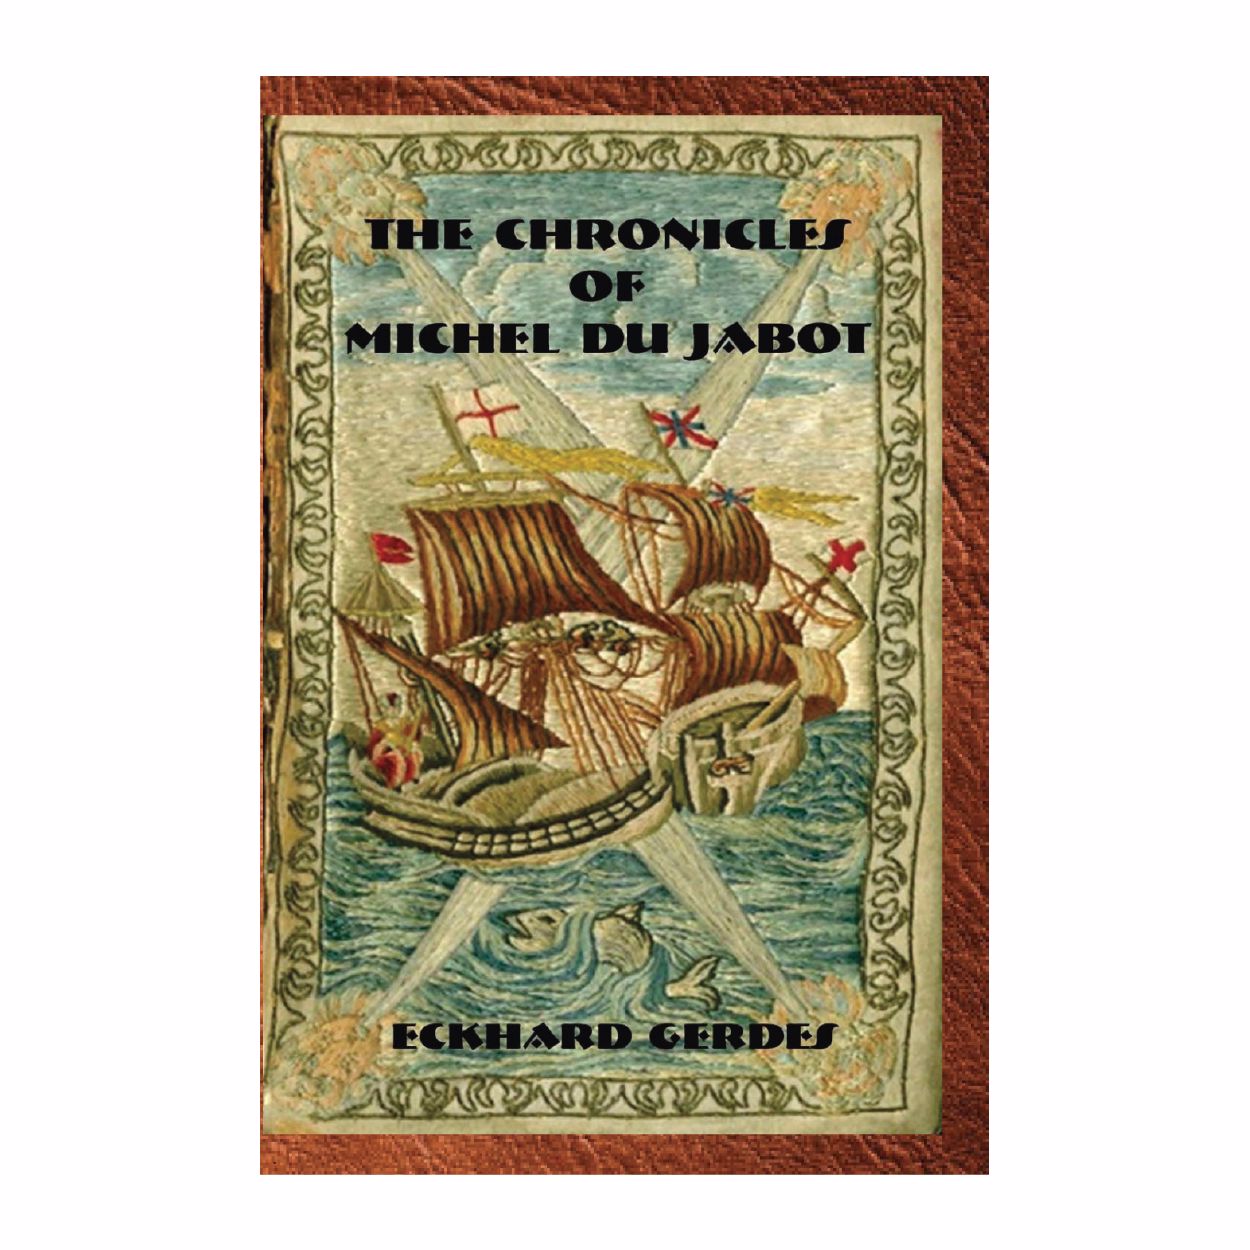 The Chronicles of Michel du Jabot (Novel) by Eckhard Gerdes